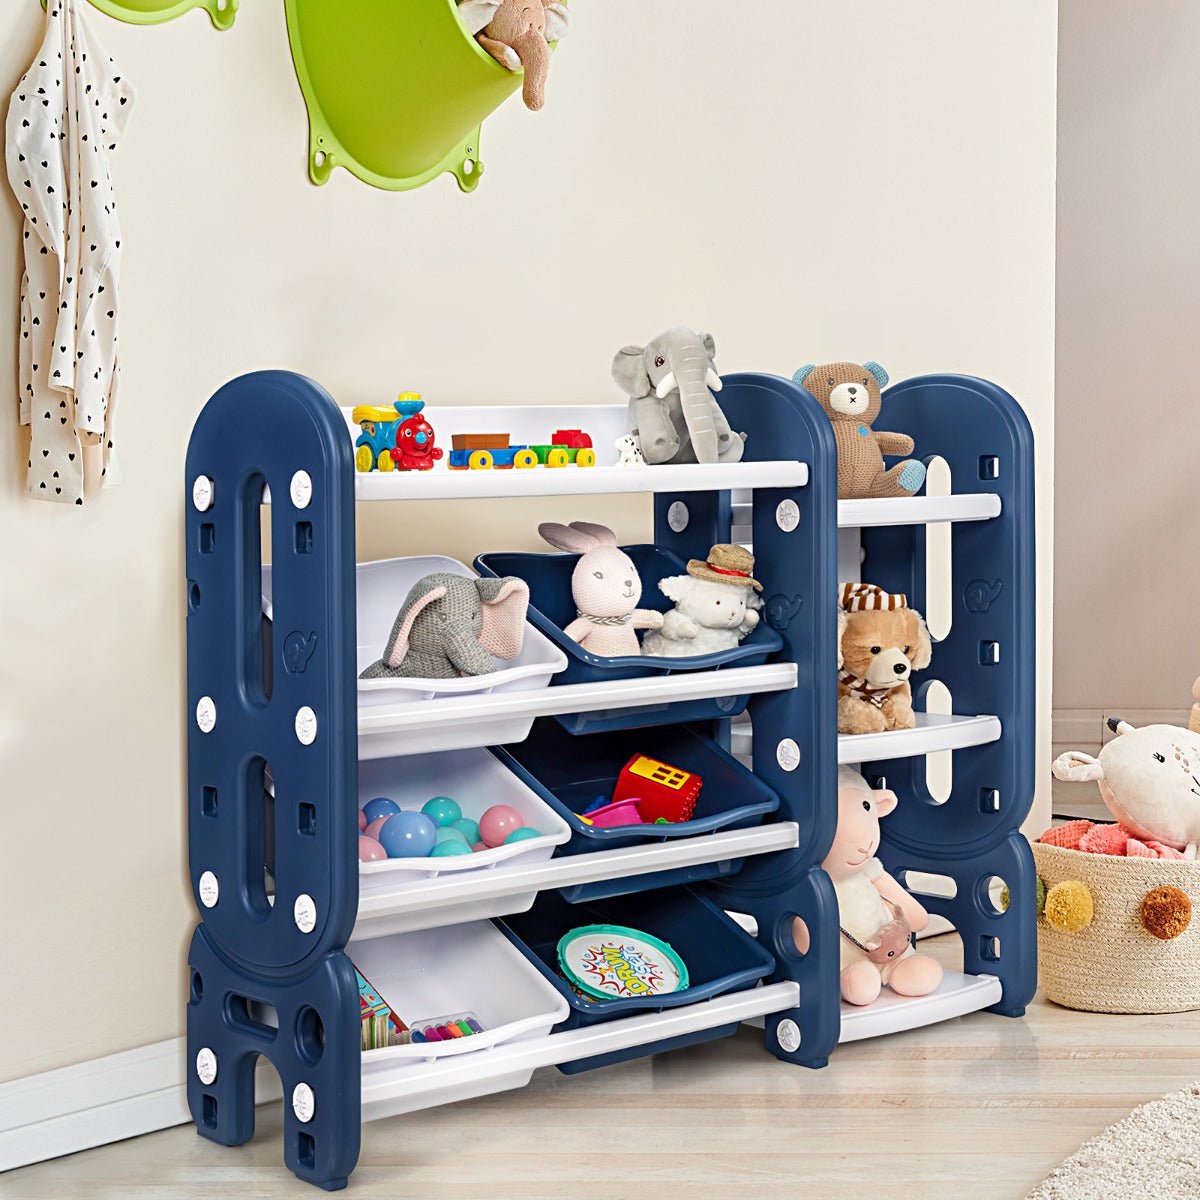 Kids Blue Toy Storage Organizer with Bookshelf - Neat and Tidy